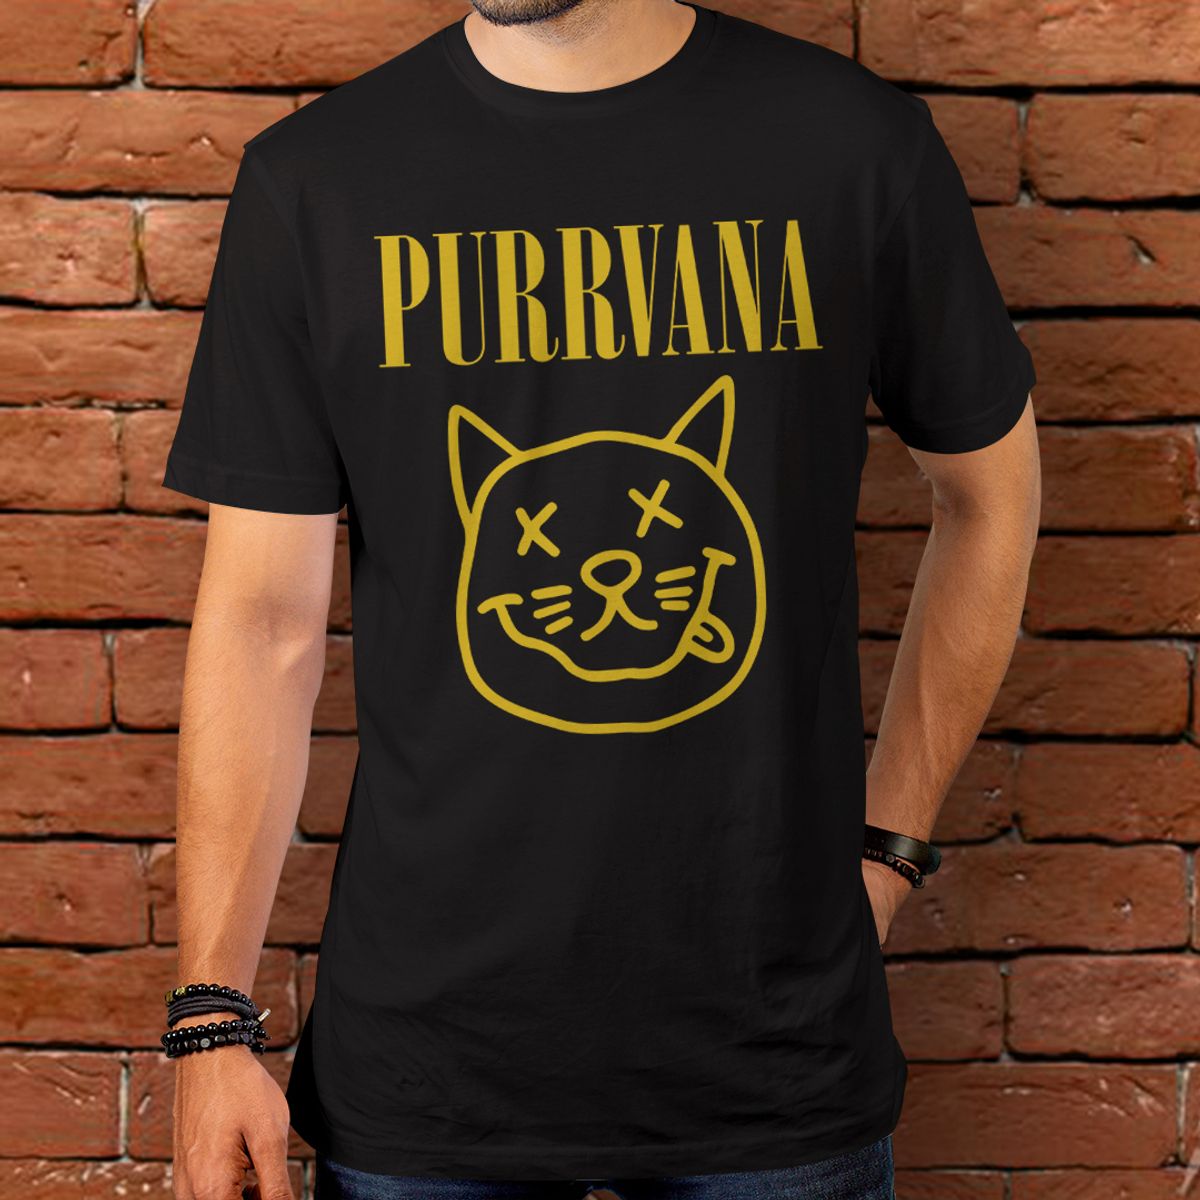 Nome do produto: Camiseta - Purrvana